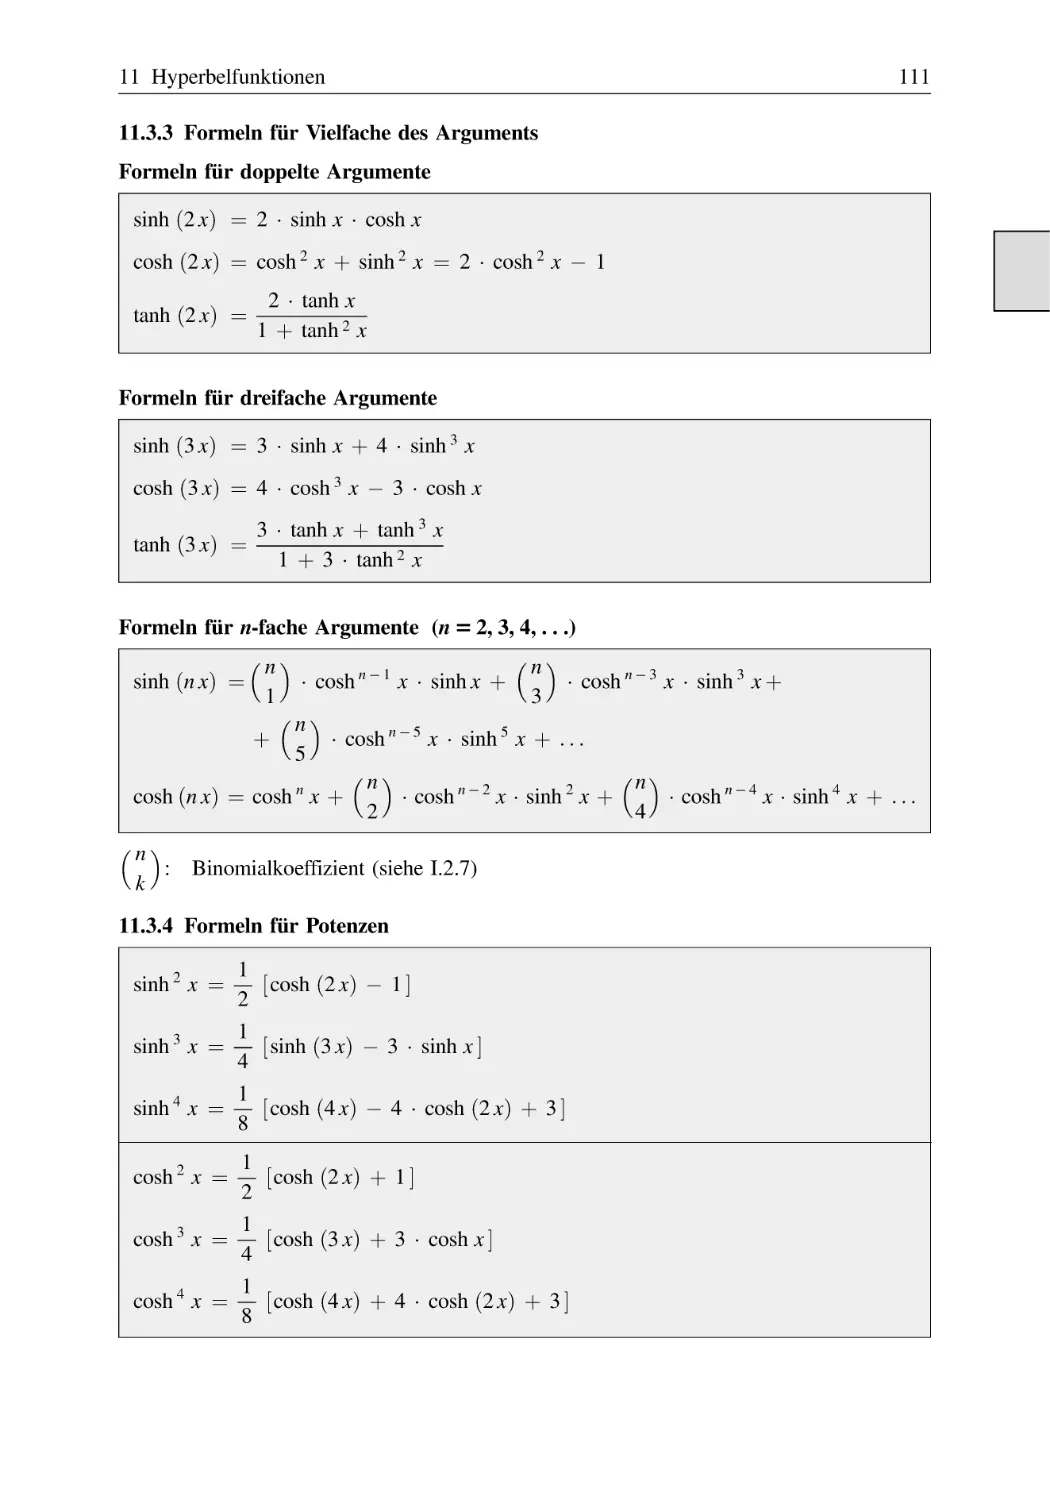 11.3.3 Formeln für Vielfache des Arguments
11.3.4 Formeln für Potenzen